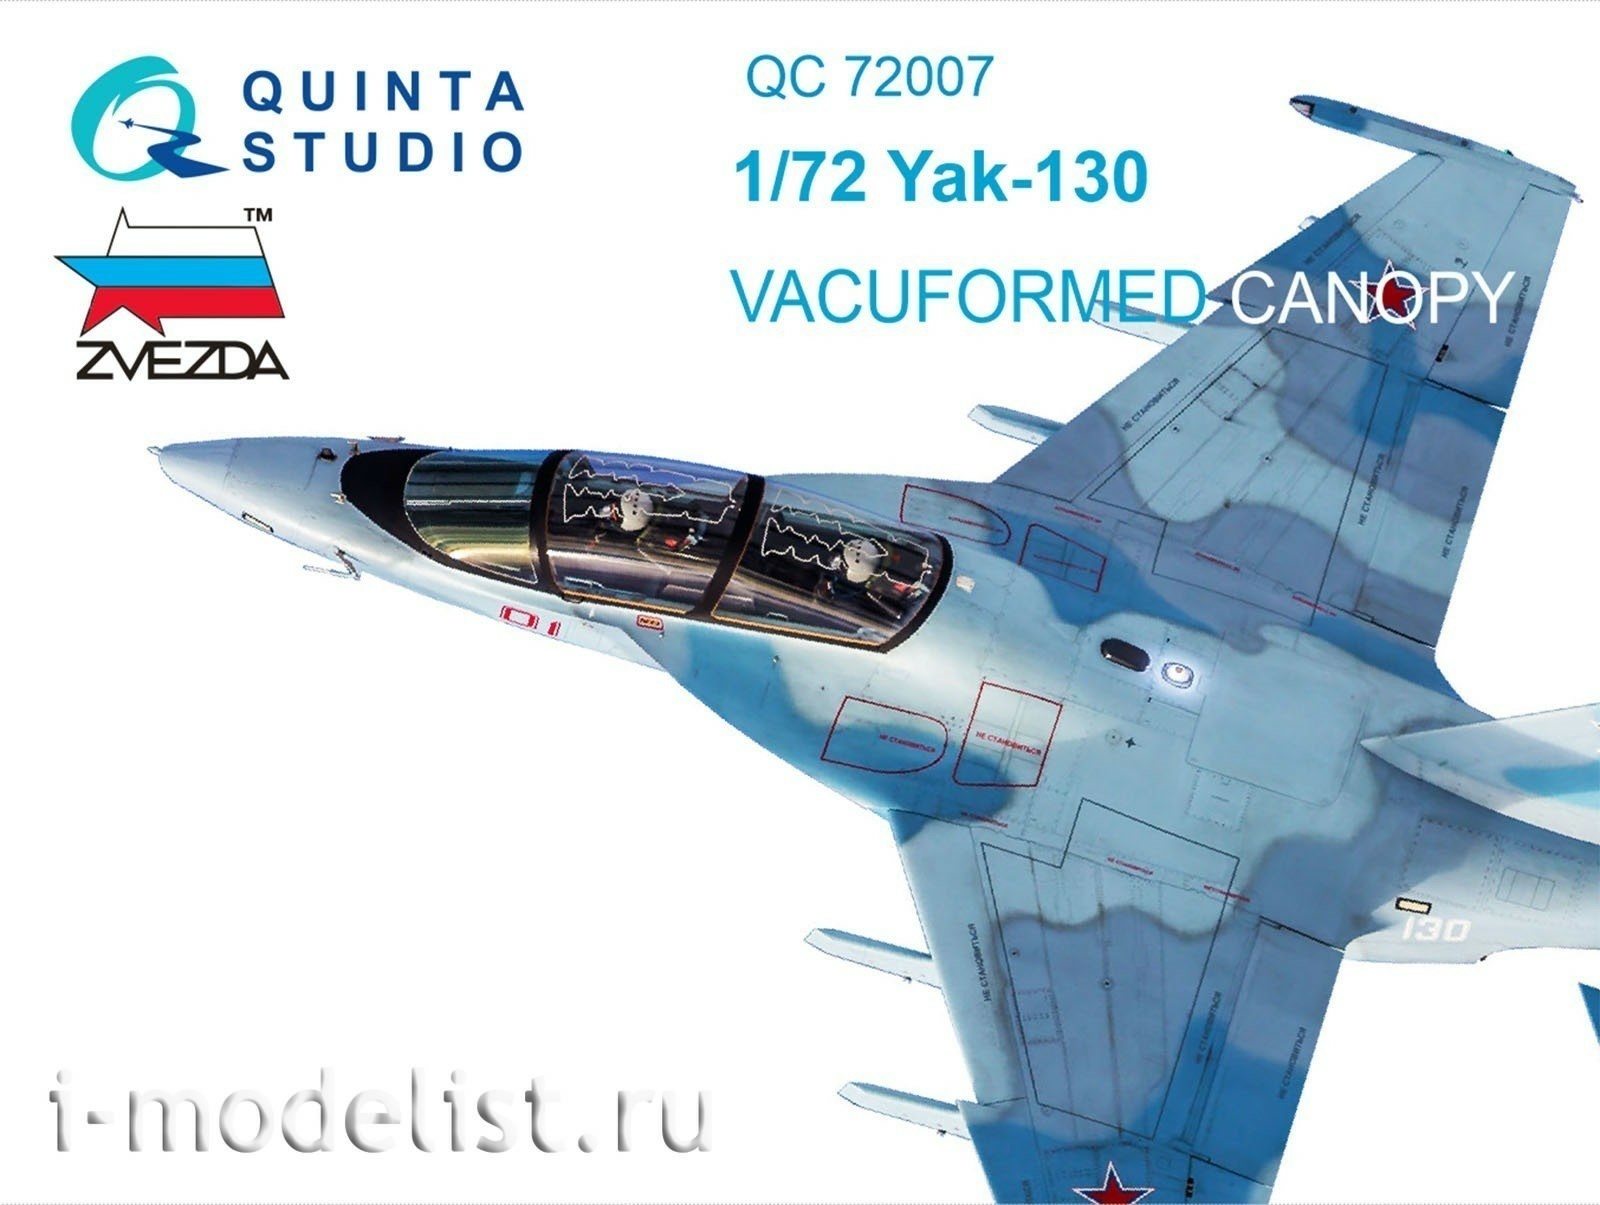 QC72007 Quinta Studio 1/72 Набор остекления для модели Як-130 с дет.шнуром (для модели фирмы Звезда)